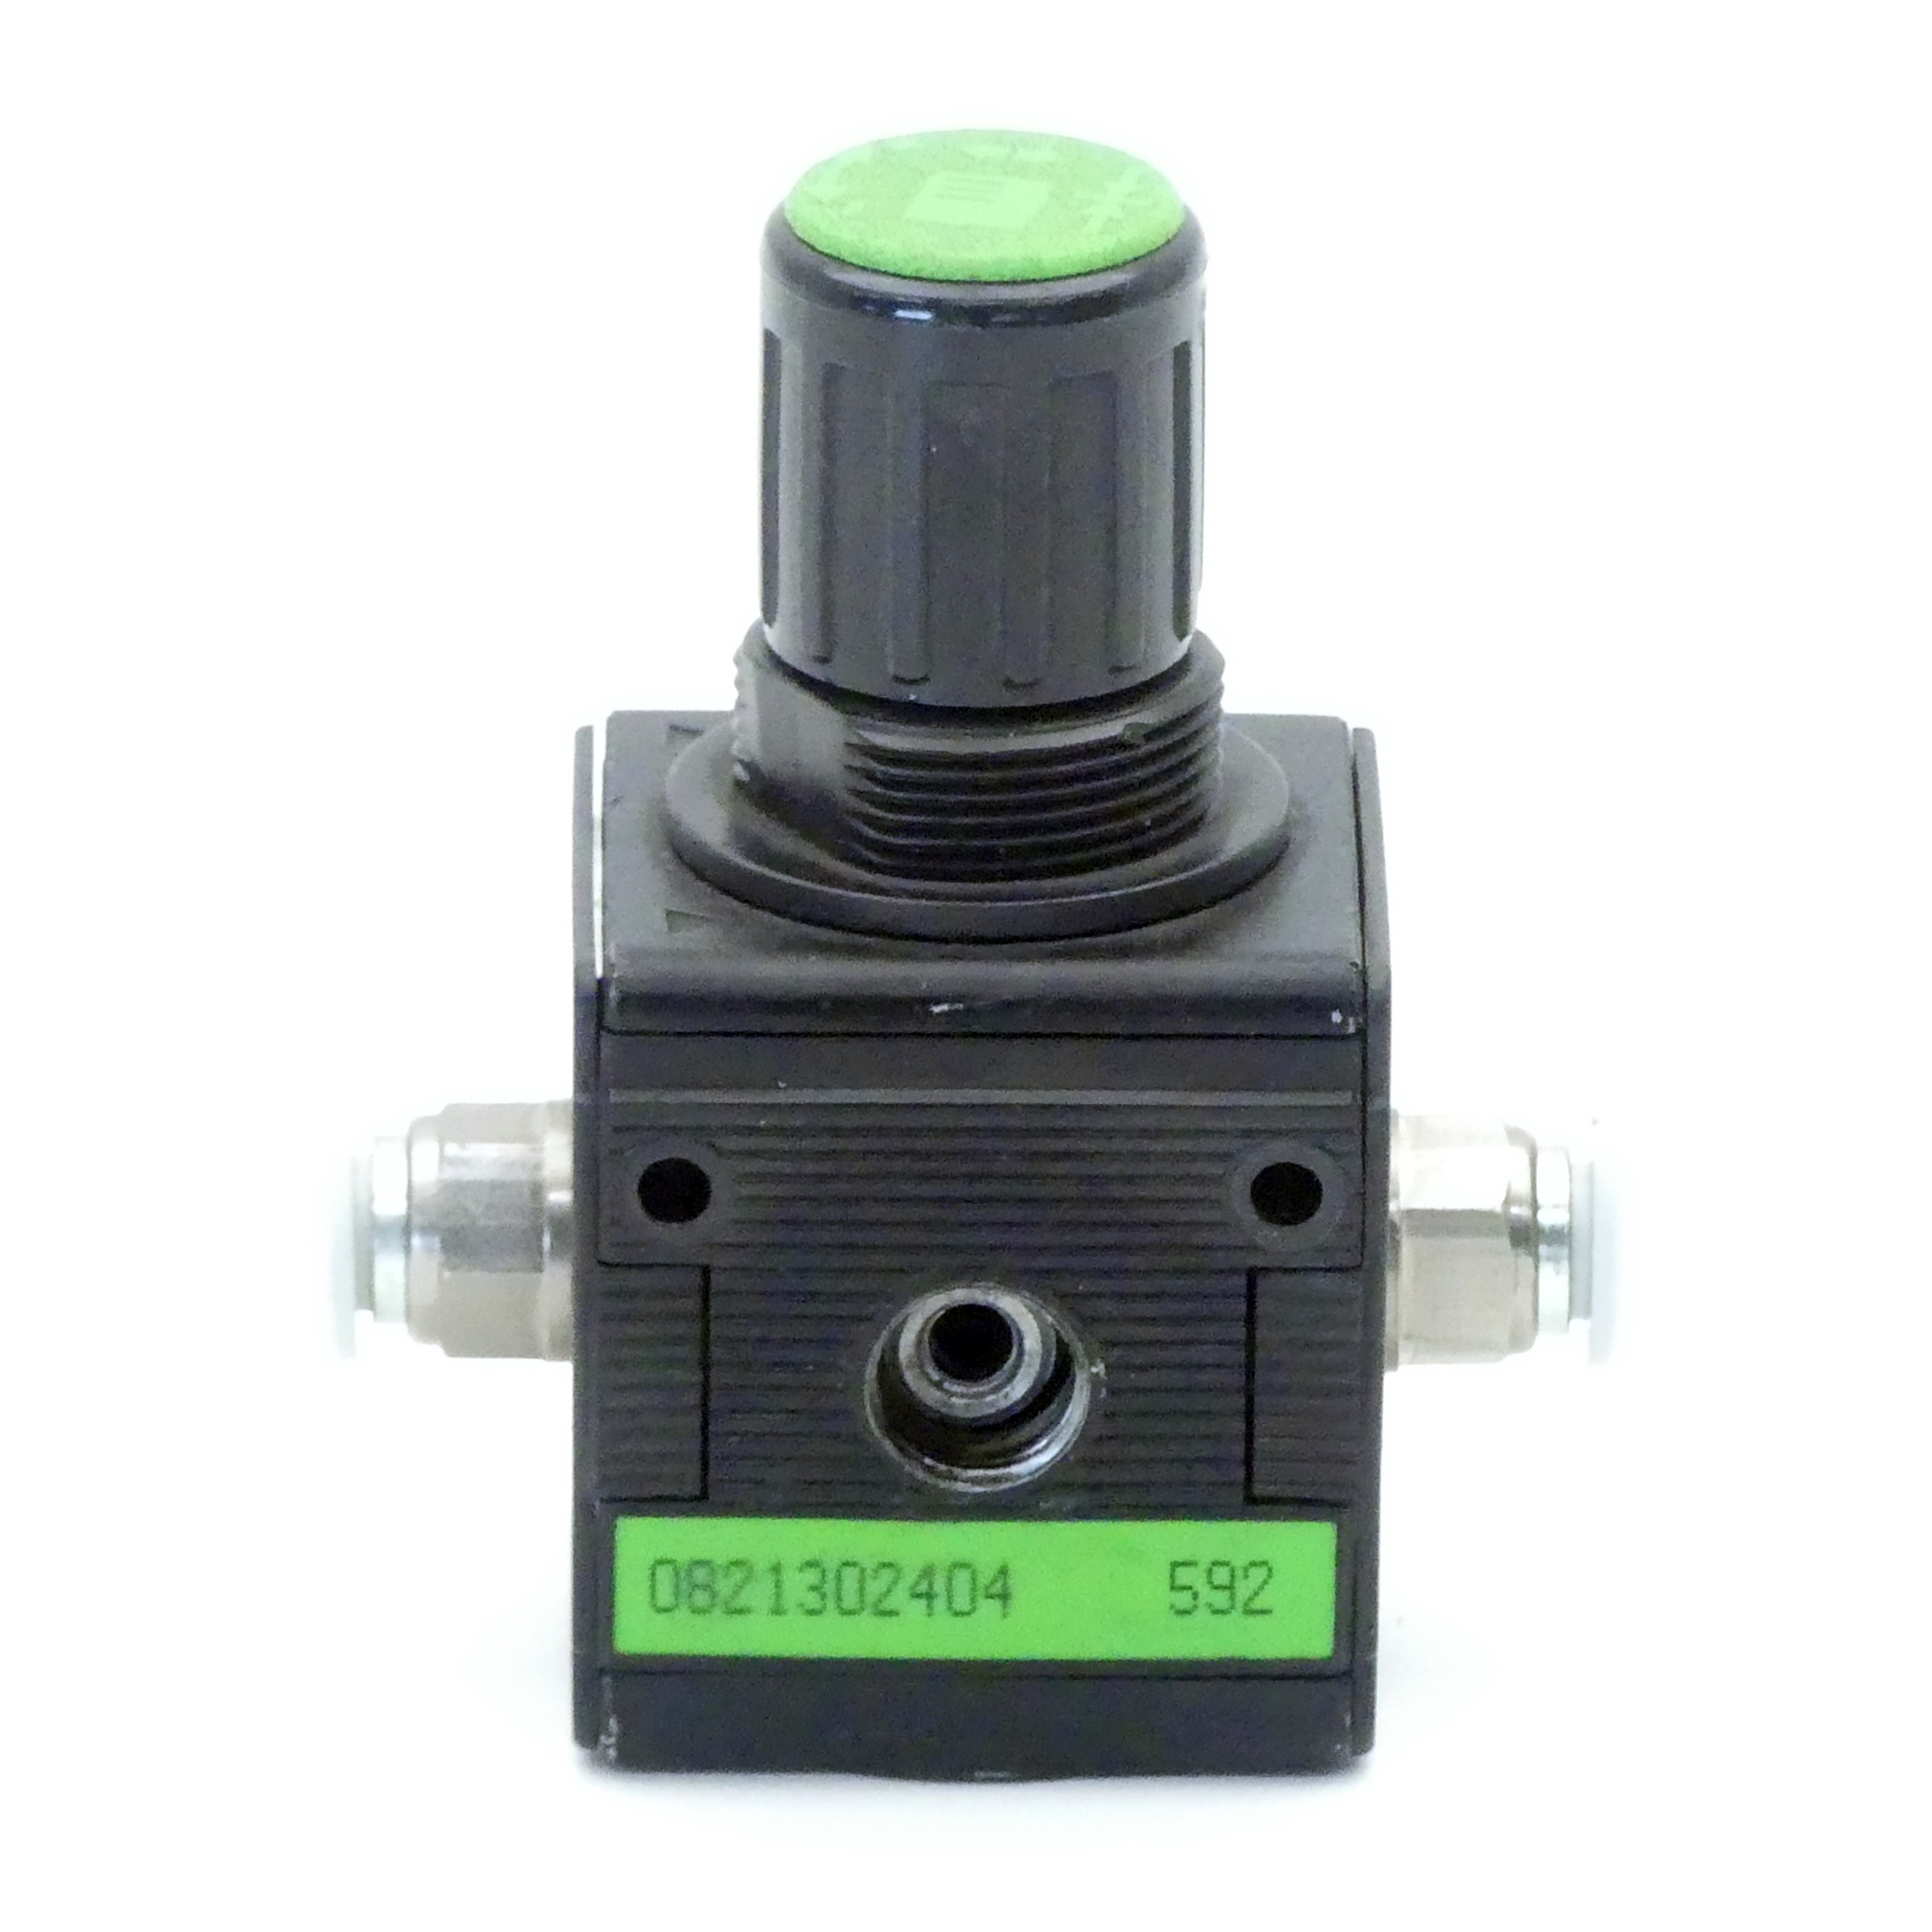 Pressure control valve NL2-RGS-G014-GAU-MAN-030-SS 